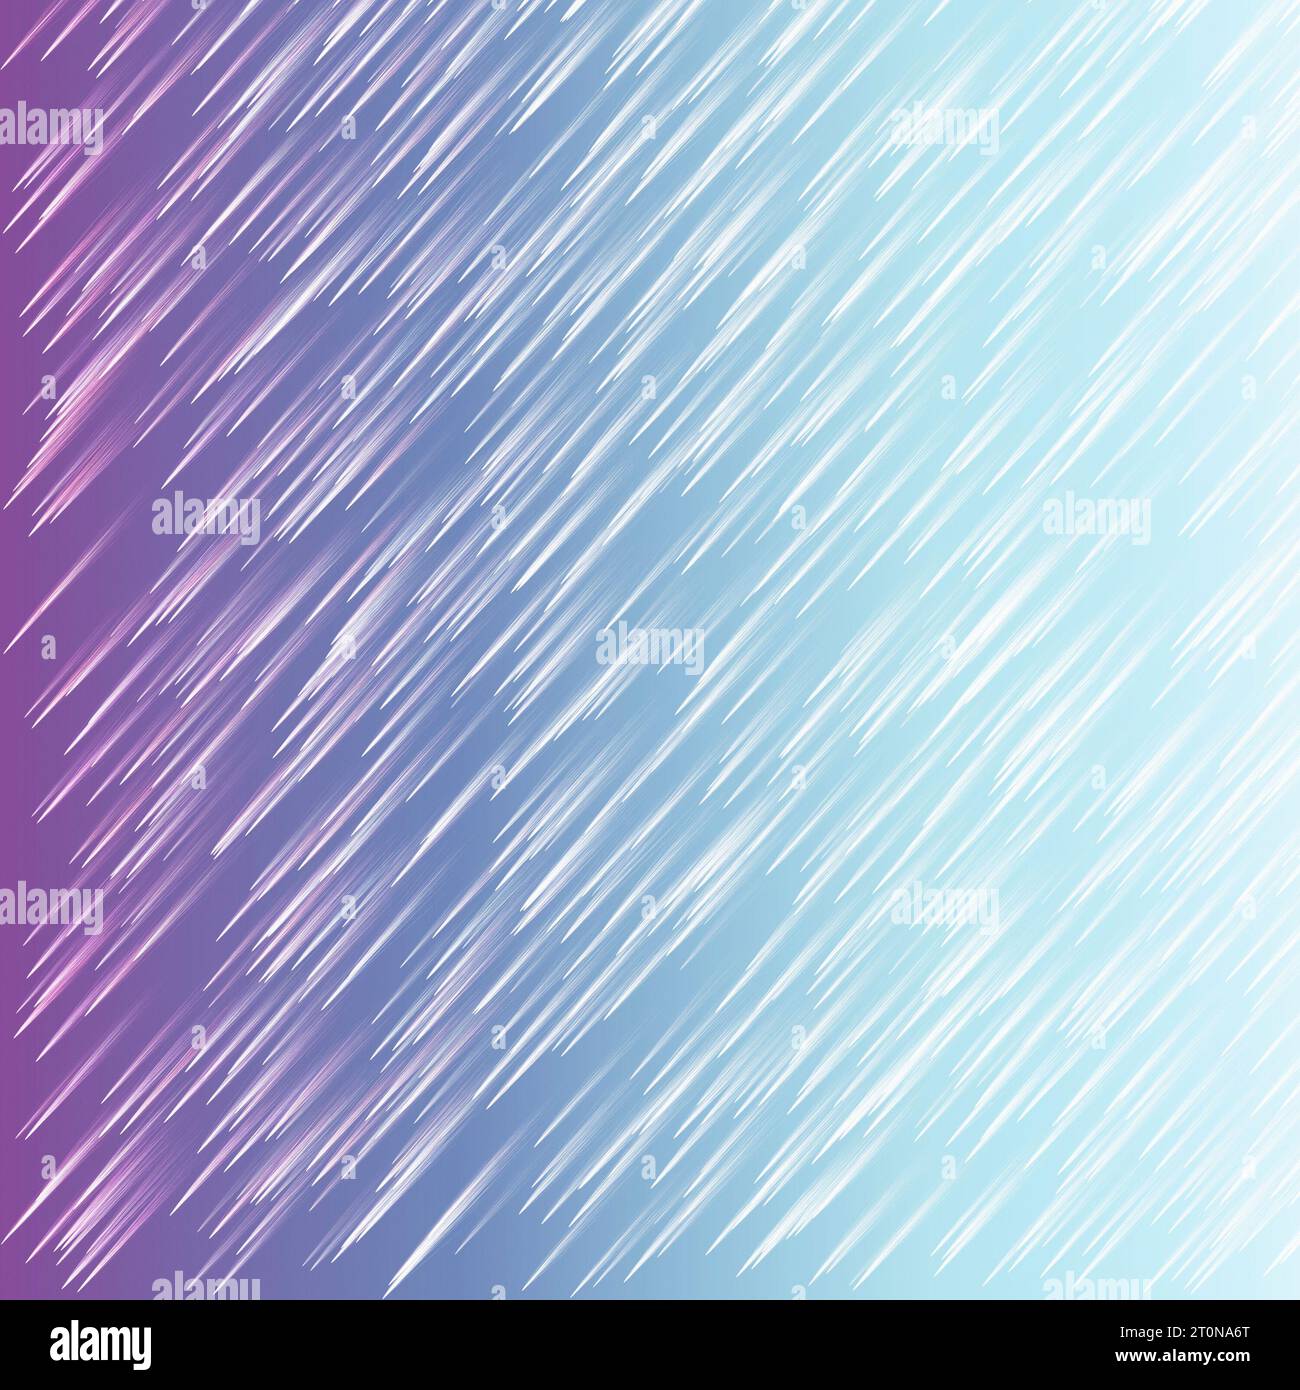 Linee rette lampeggianti bianche in movimento su sfondo sfumato blu, loop continuo. Stelle mozzafiato durante una pioggia meteorica Foto Stock